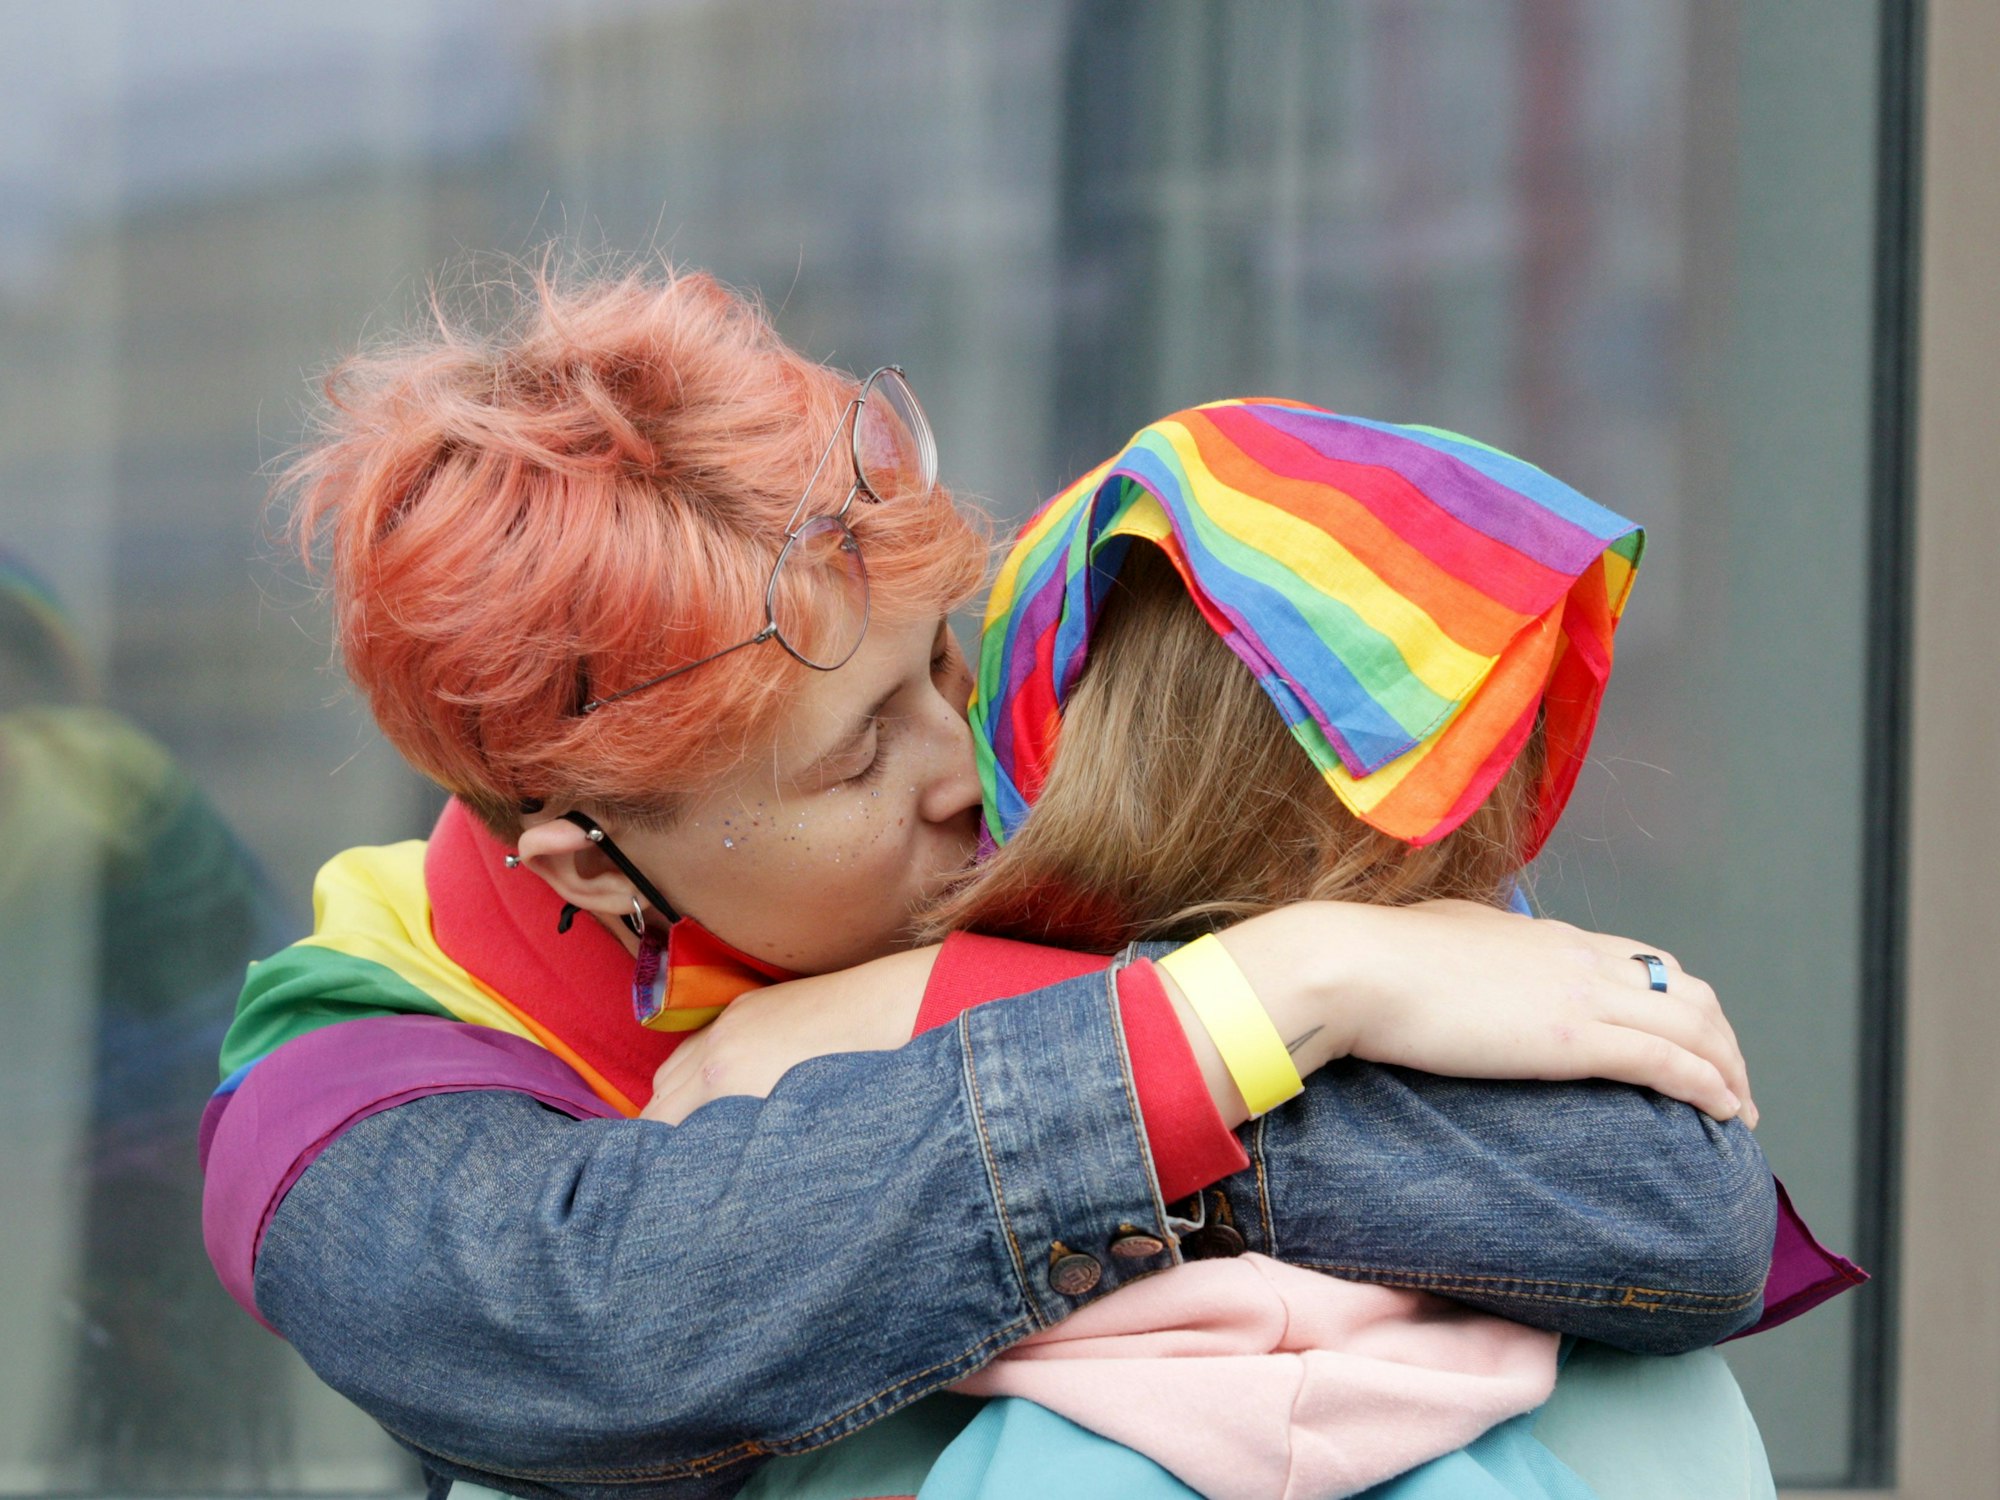 Das Foto aus dem Jahr 2021 zeigt zwei Frauen, die sich küssen. Beide tragen Regenbogenflaggen, das offizielle Symbol der LGBTQI+-Community.